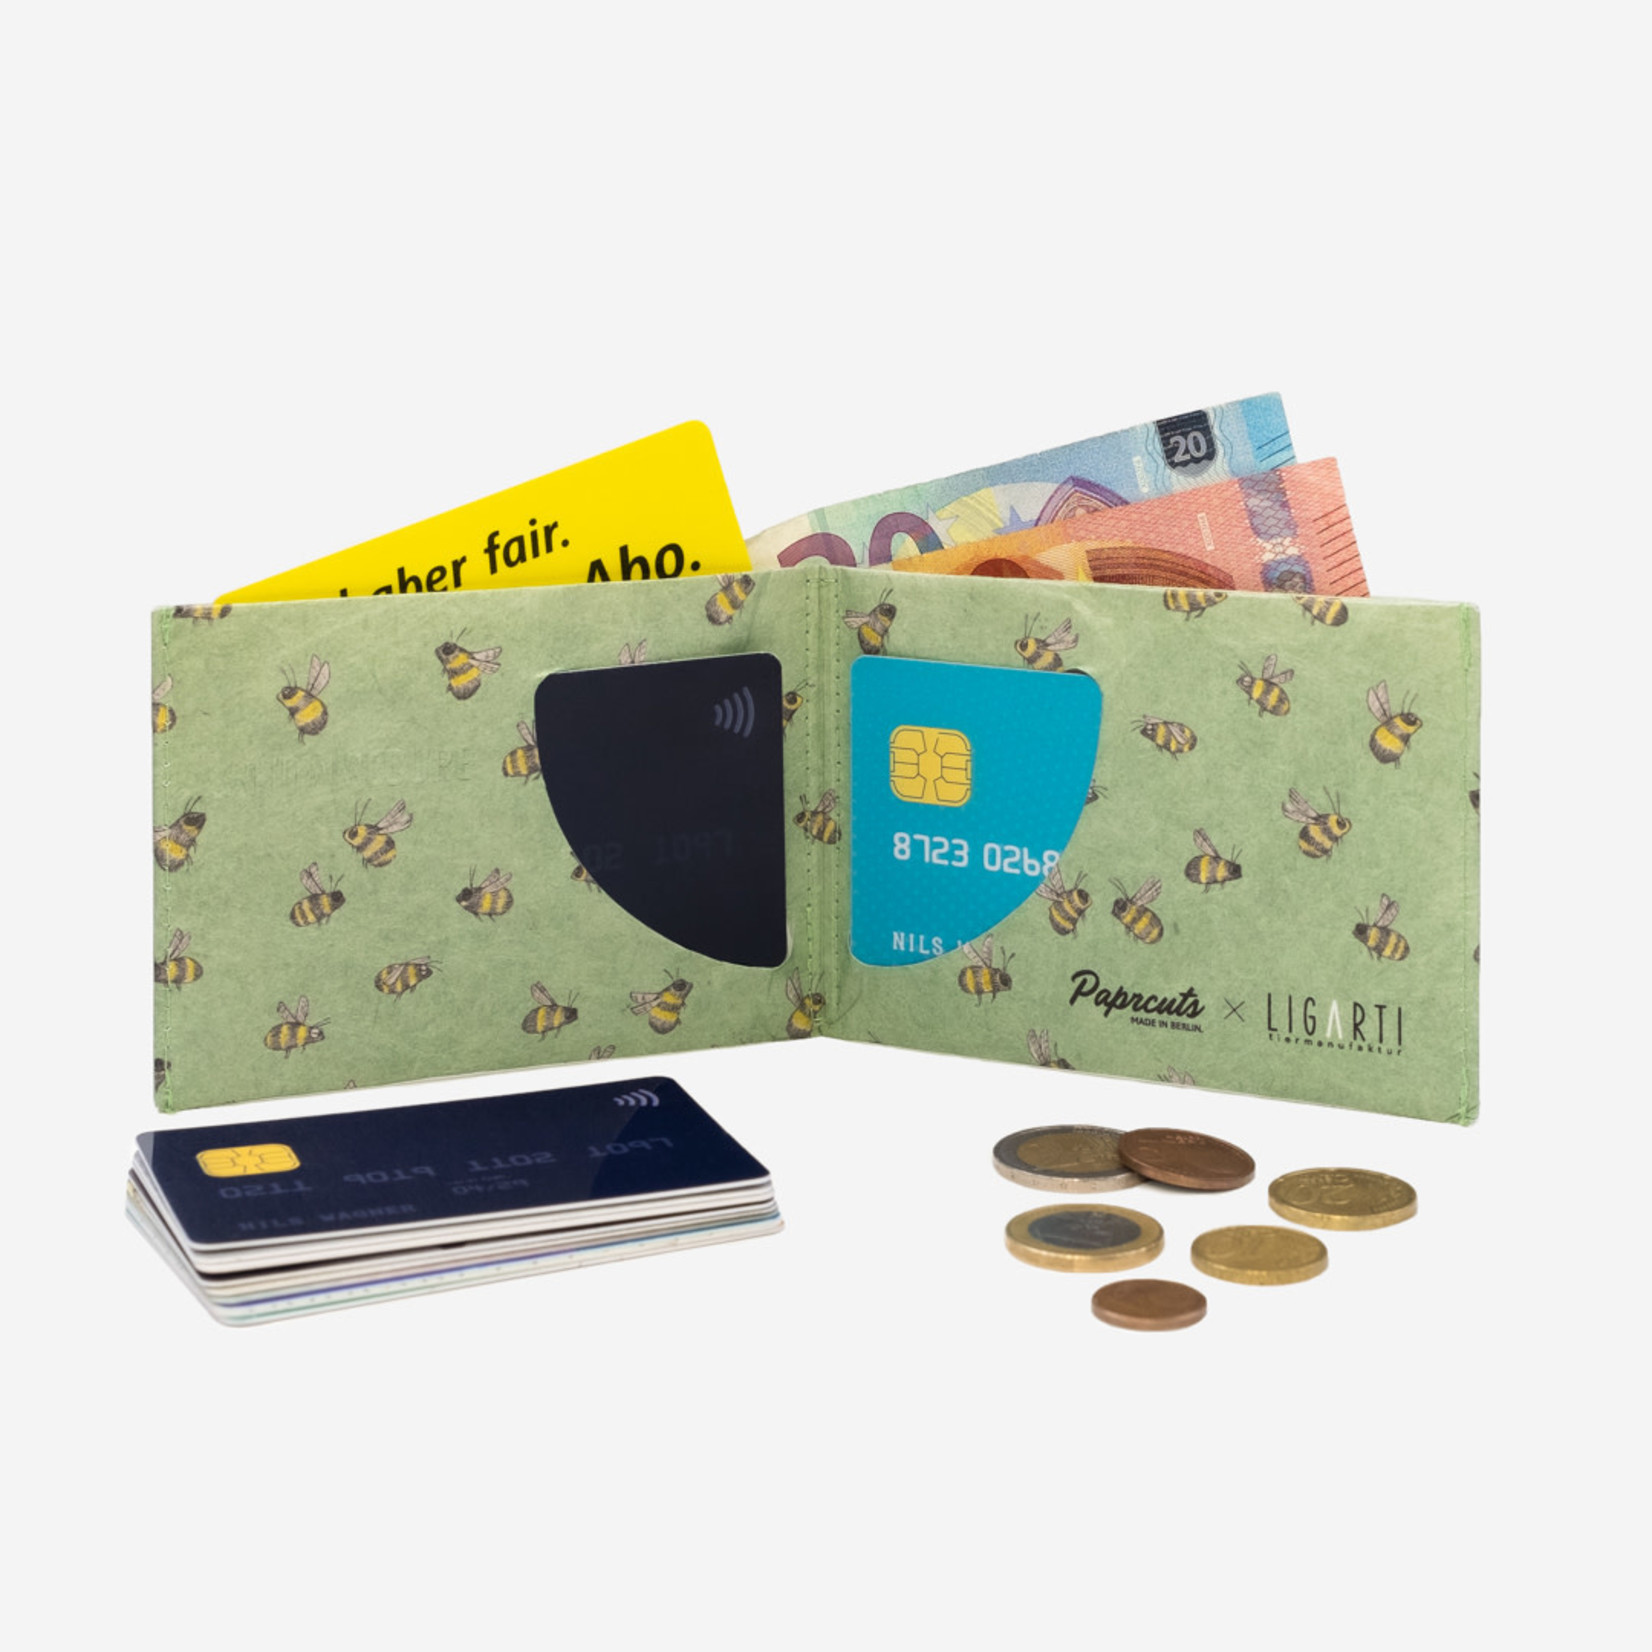 Paprcuts Portemonnaie RFID Secure - Die Begegnung | Ligarti Koop